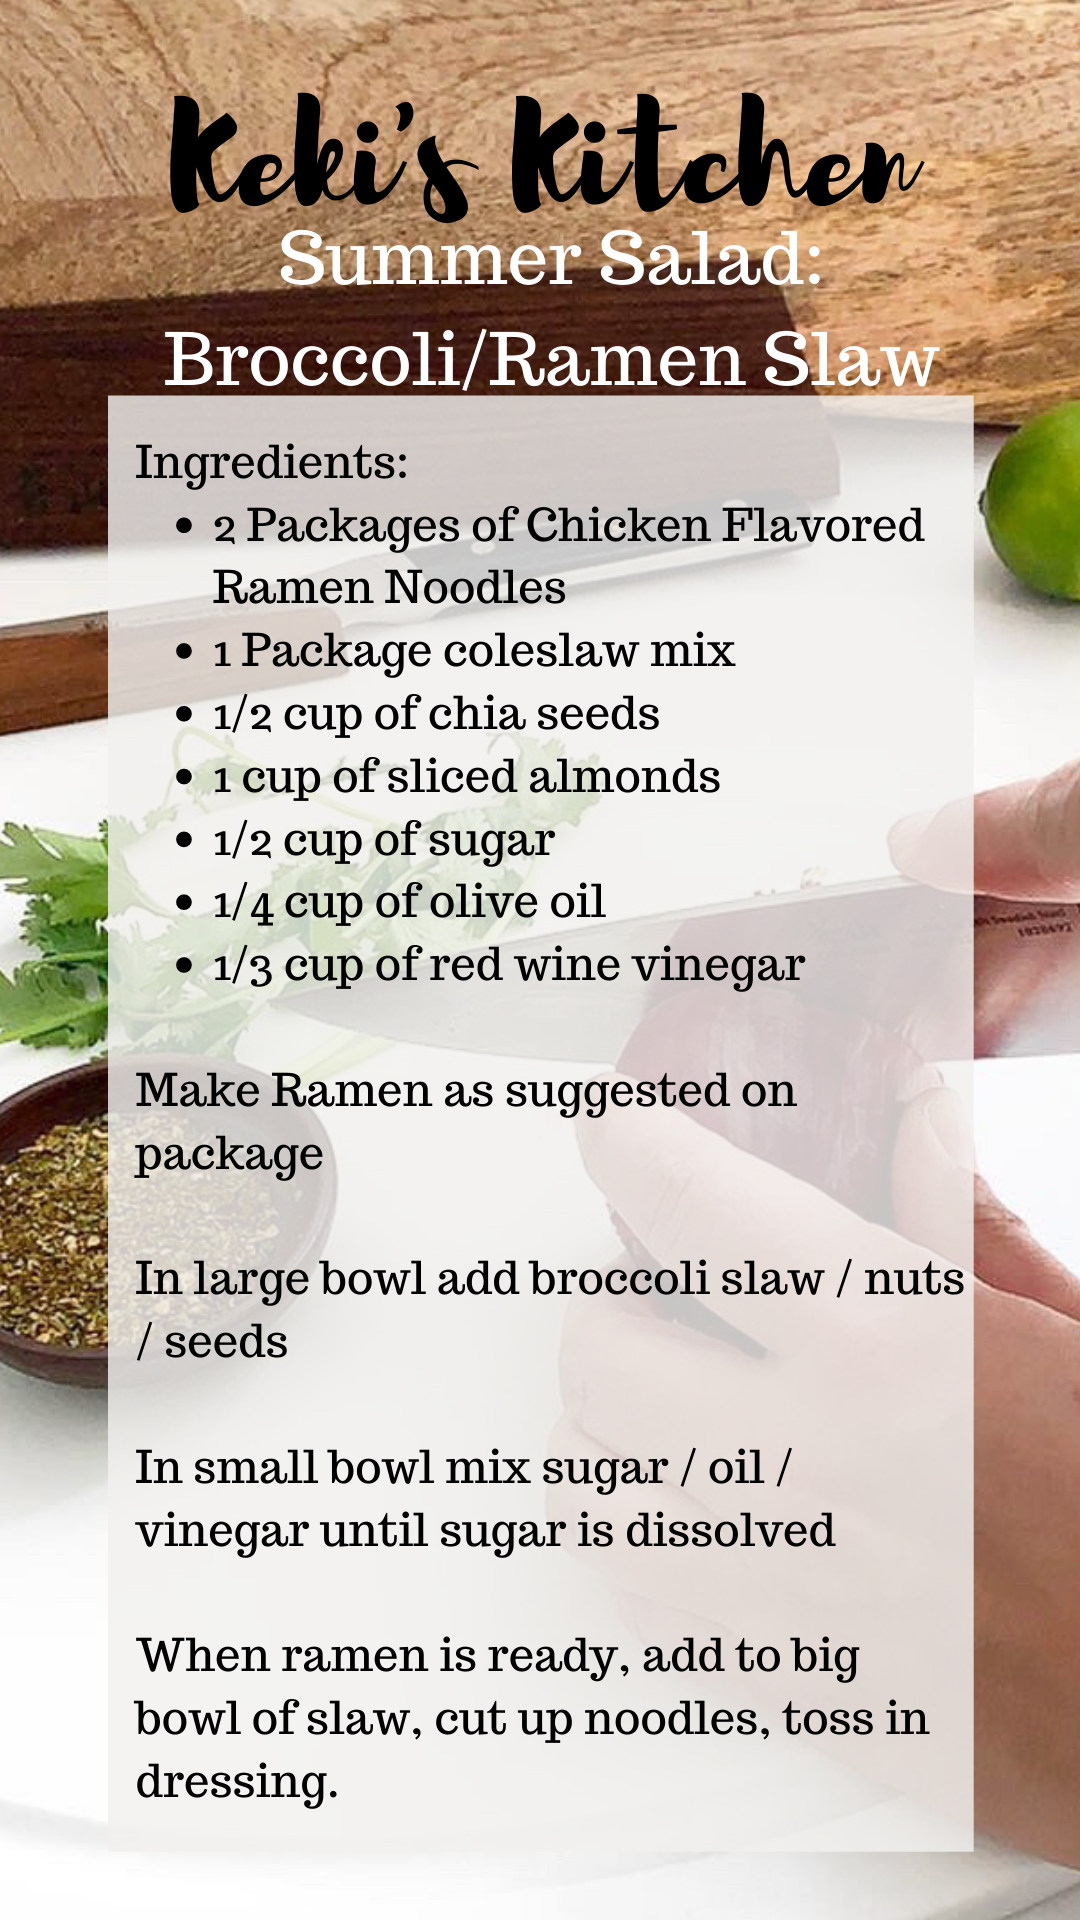 Summer Salad Recipes Broccoli and Ramen Noodle salad #recipe #saladrecipes